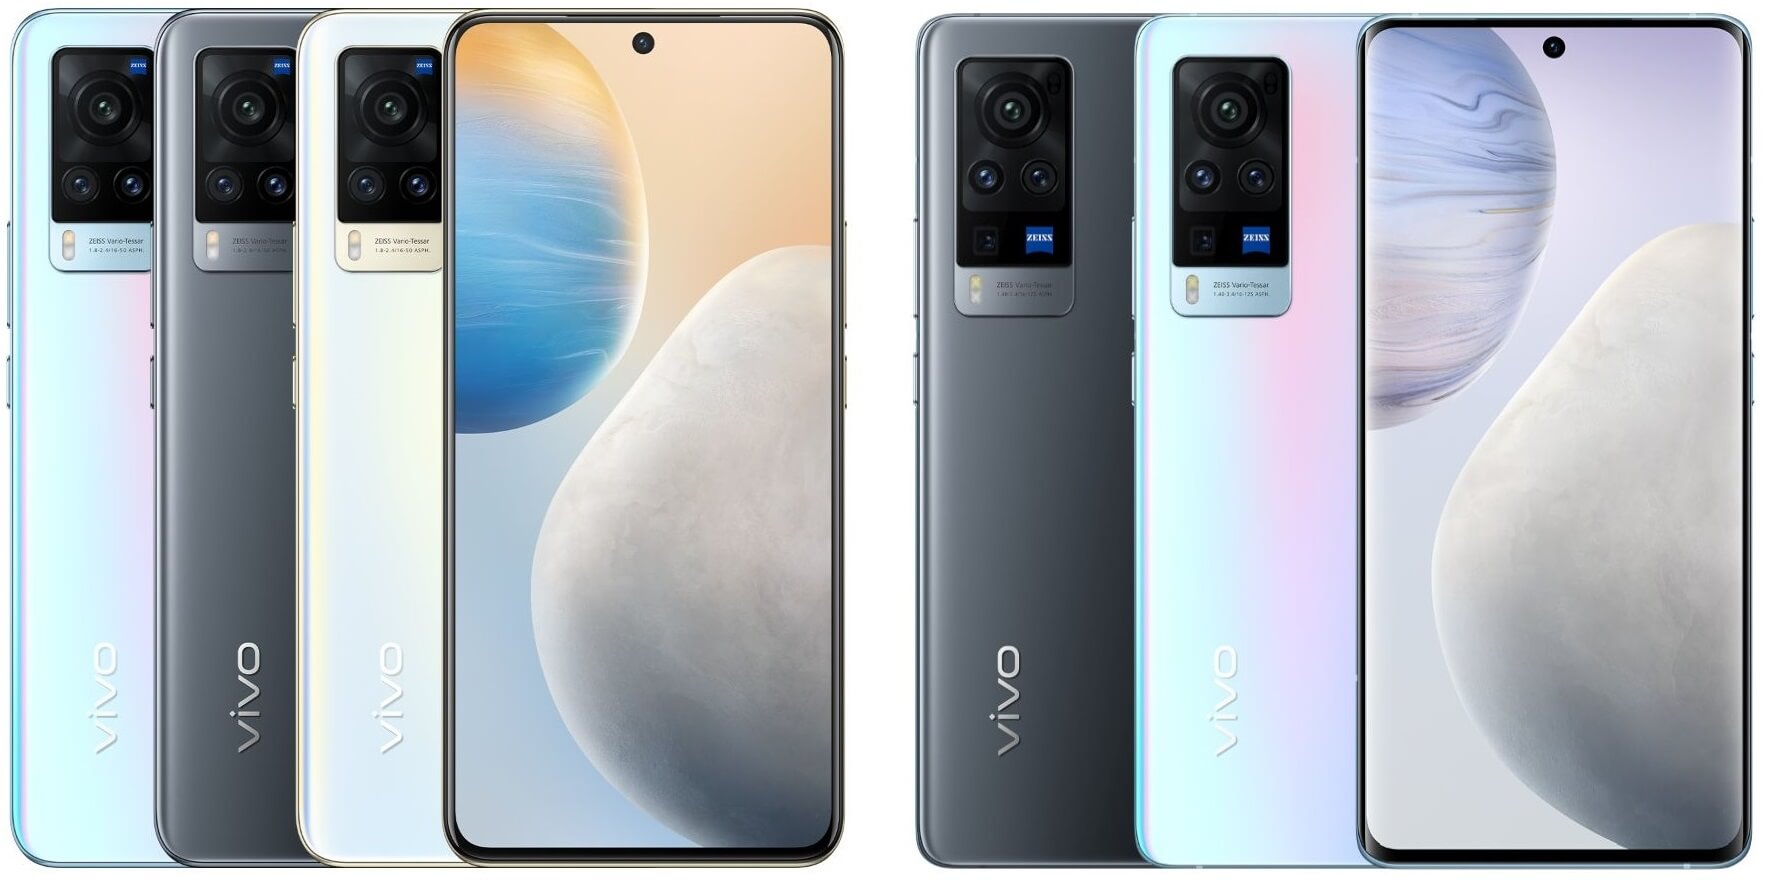 vivo X60 and X60 pro colors